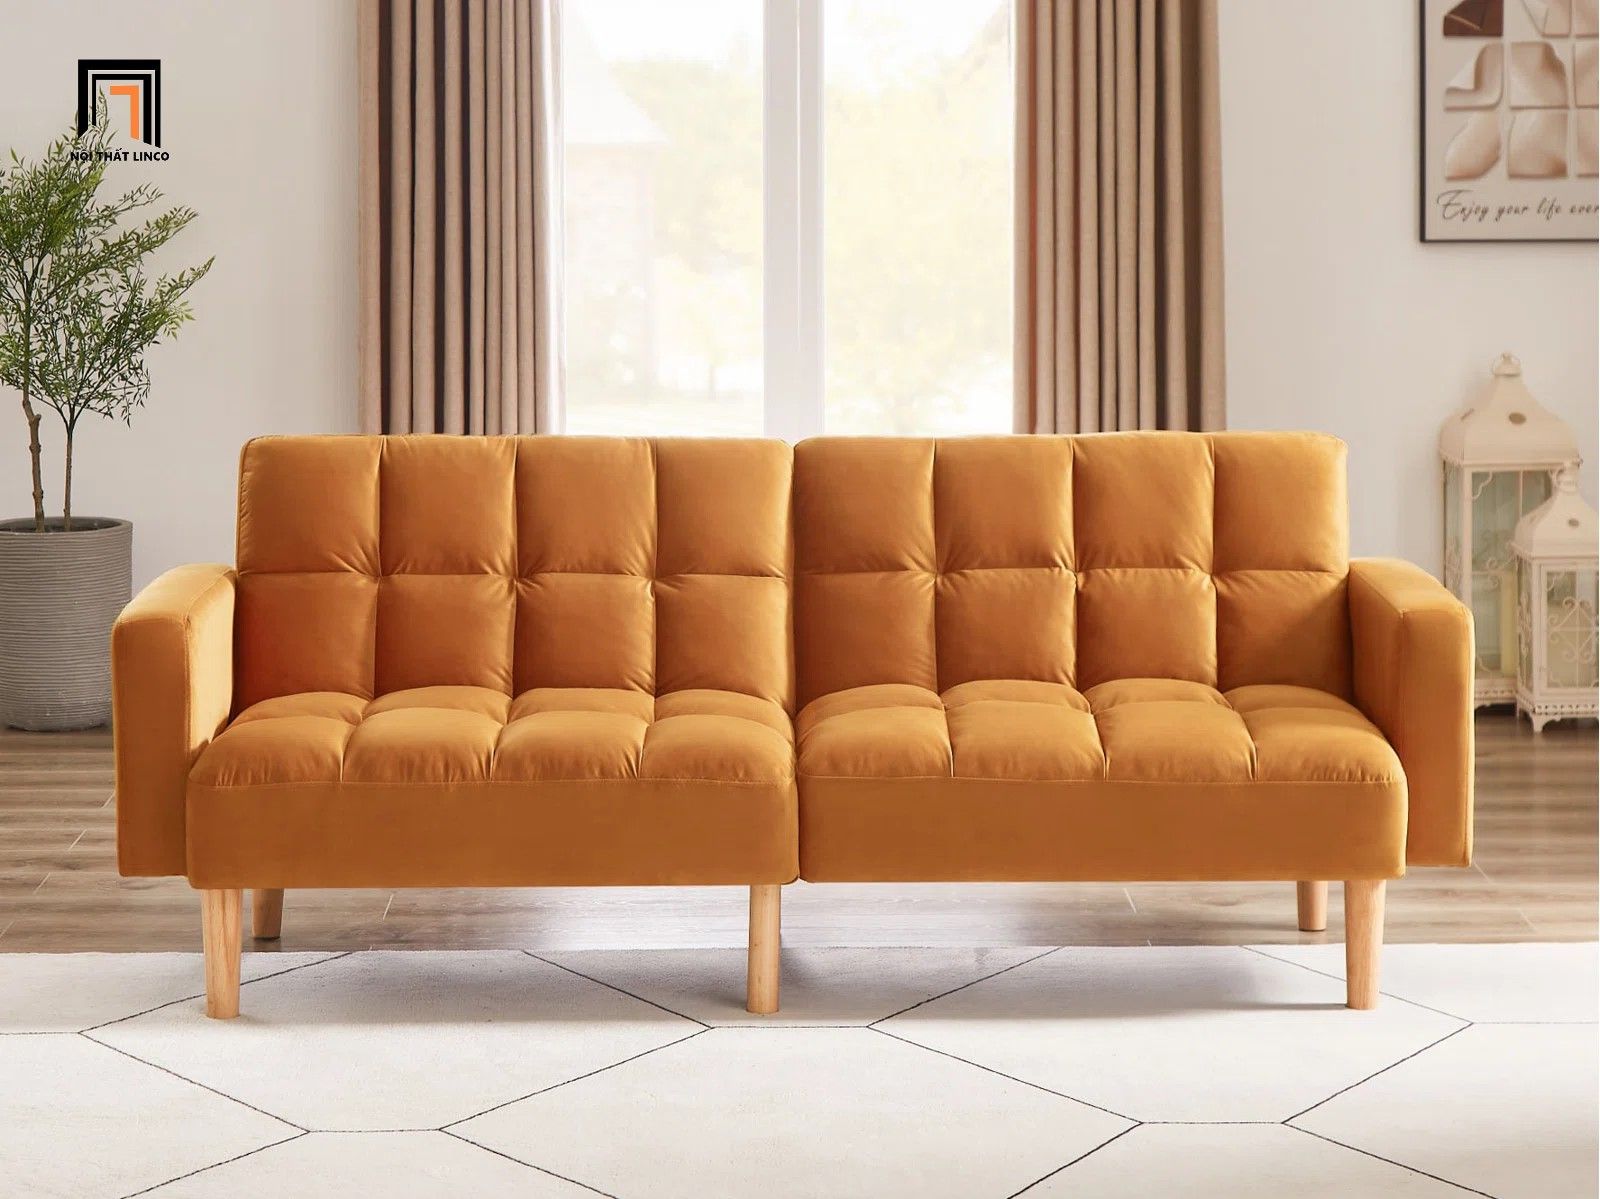  Ghế sofa giường vải nỉ GB43 Teplyn dài 1m9 cho phòng nhỏ 